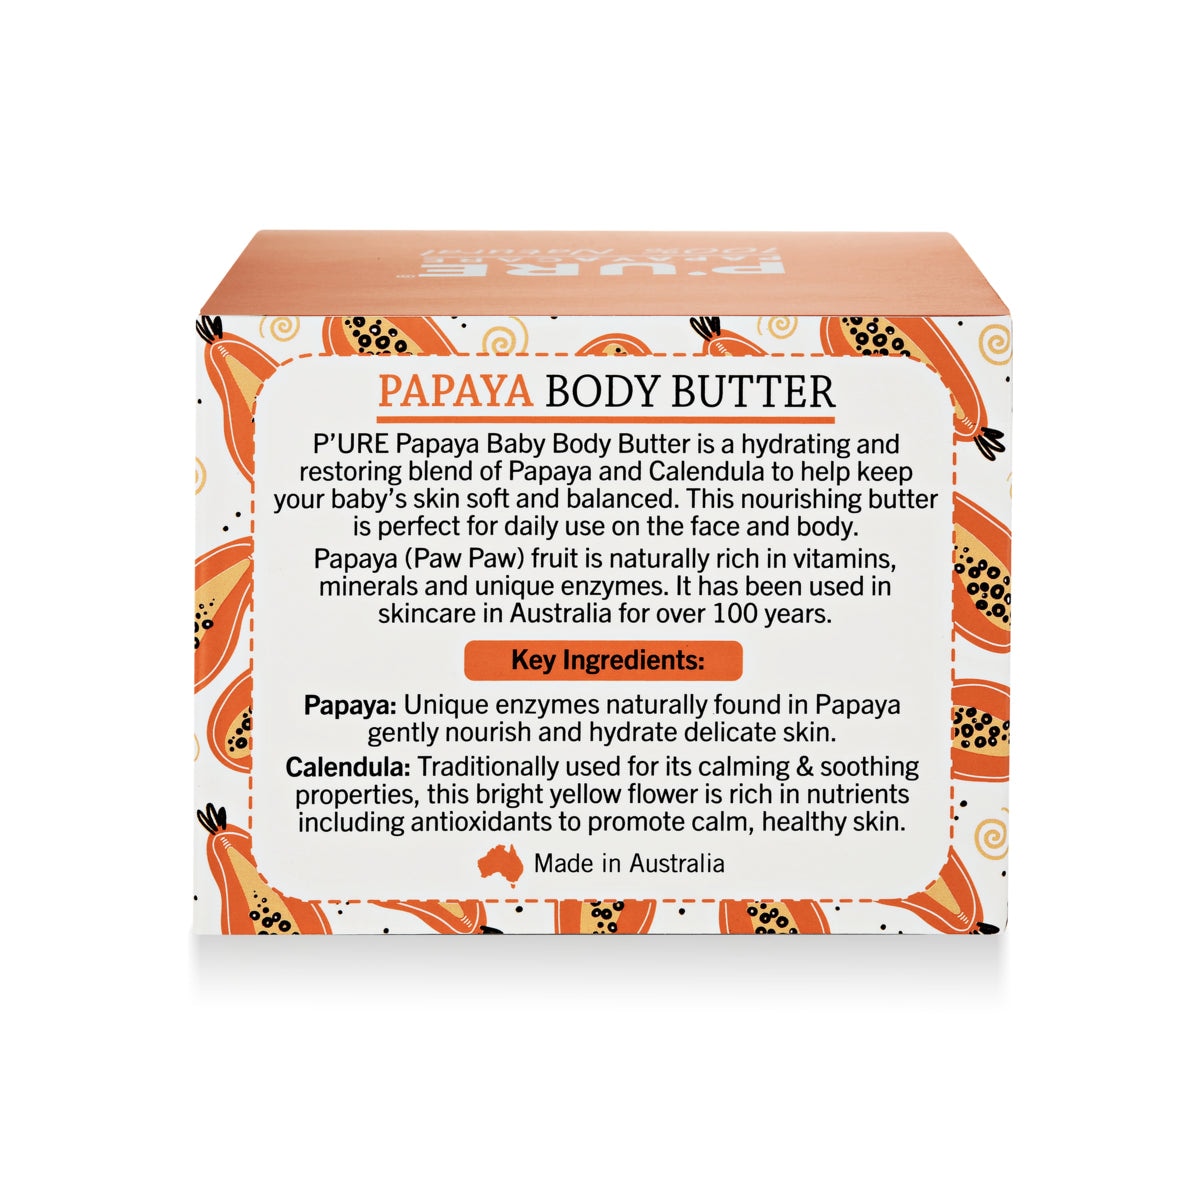 P'ure Papayacare Papaya Baby Body Butter 100g